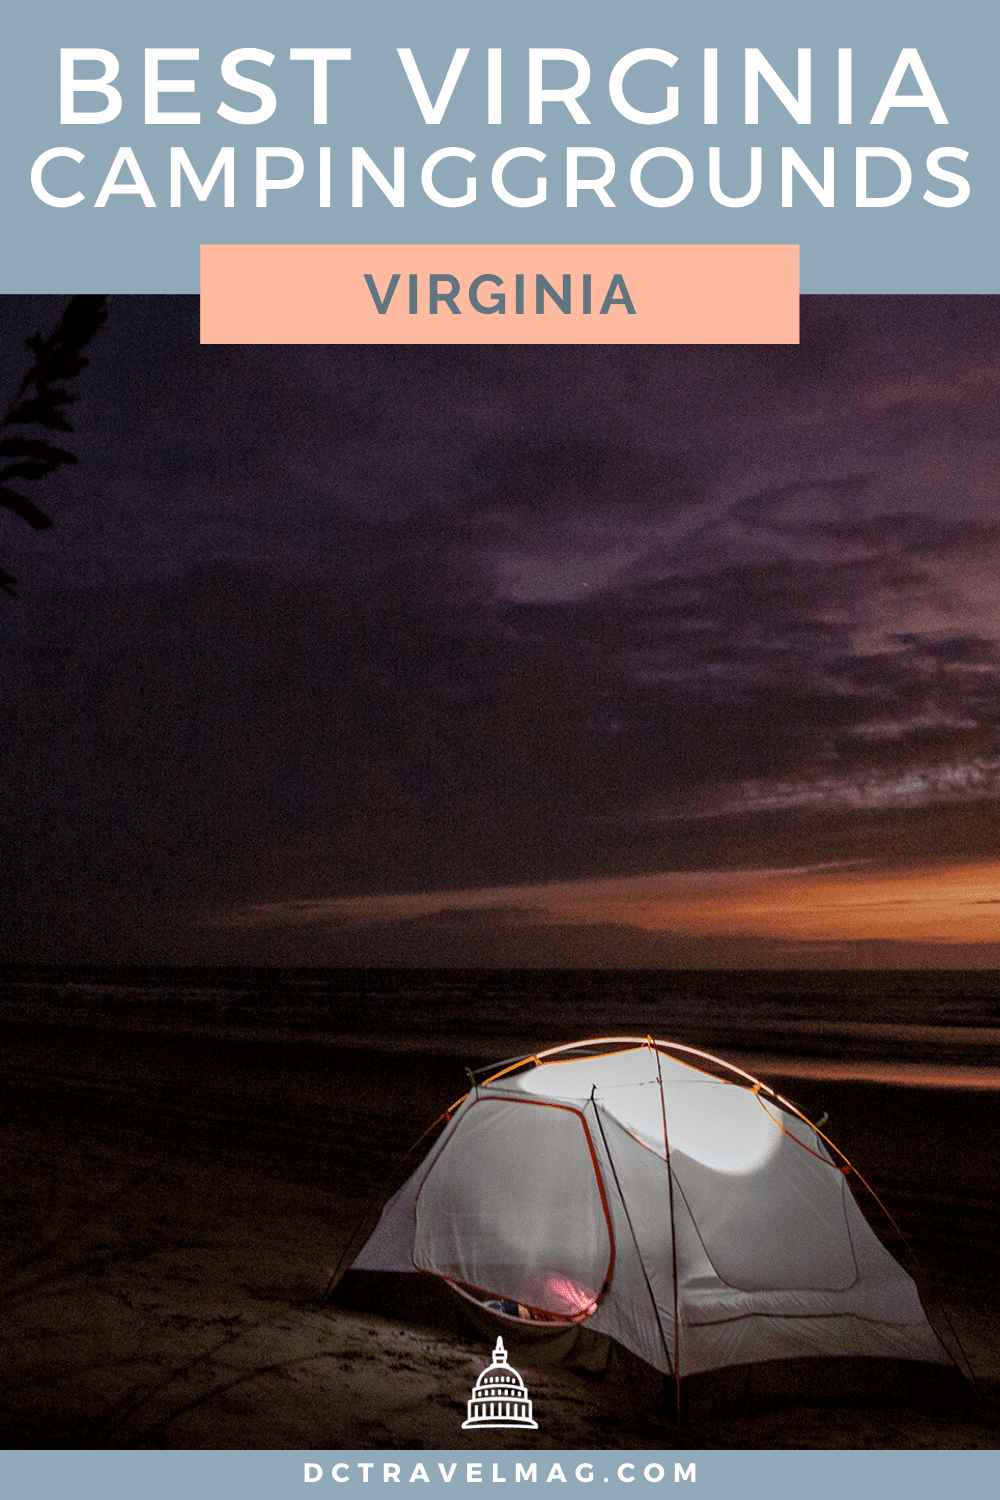 Camping in Virginia